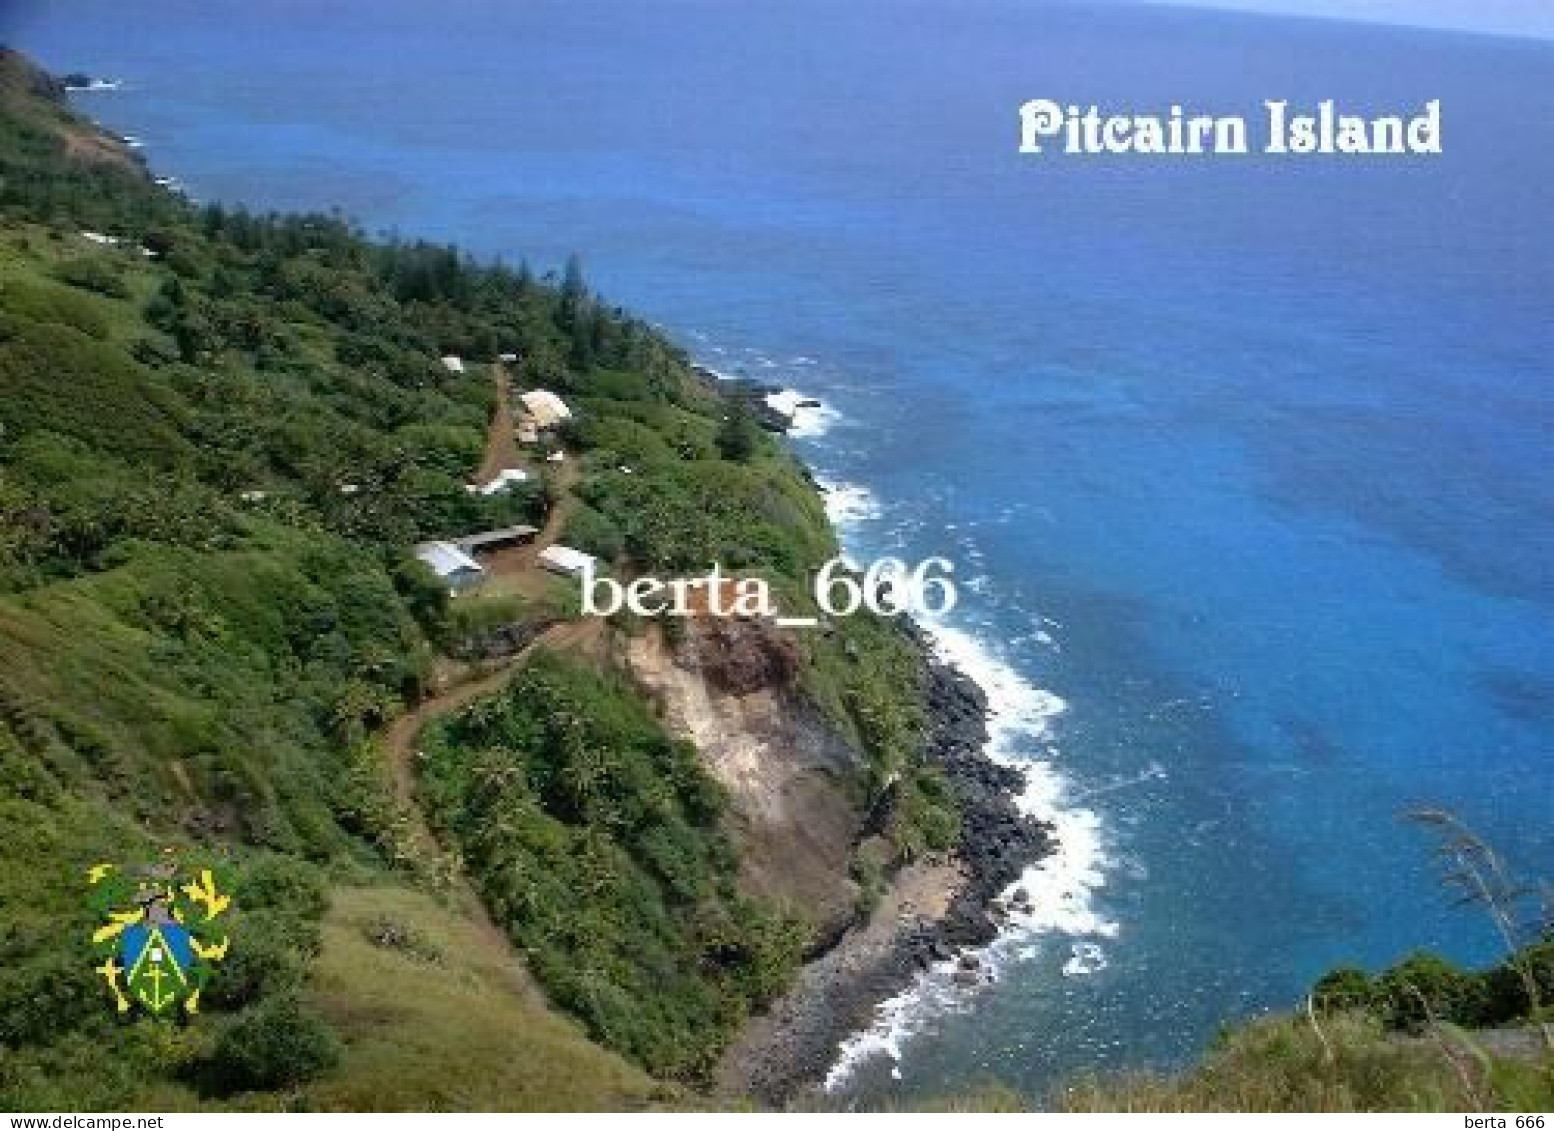 Pitcairn Island Overview New Postcard - Pitcairn Islands